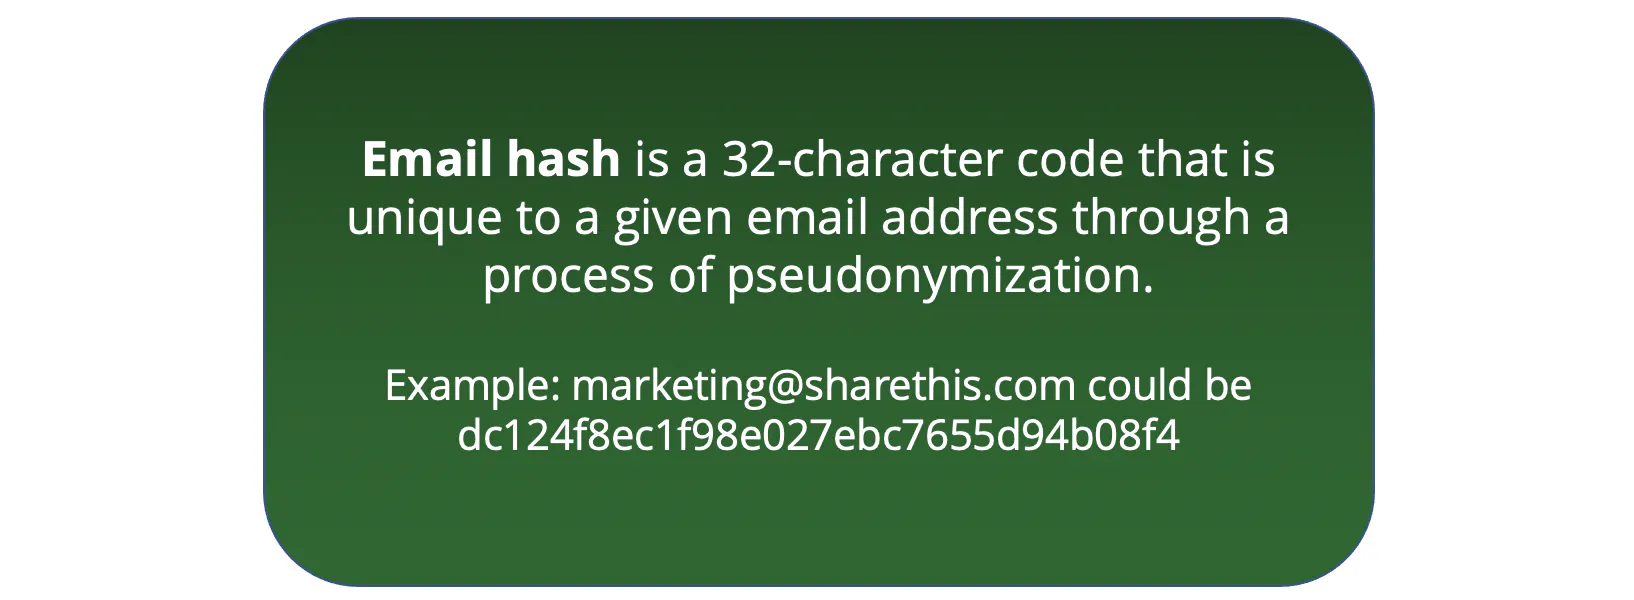 メールハスとは、偽名化のプロセスを経て、与えられた電子メールアドレスに固有の32文字のコードのことです